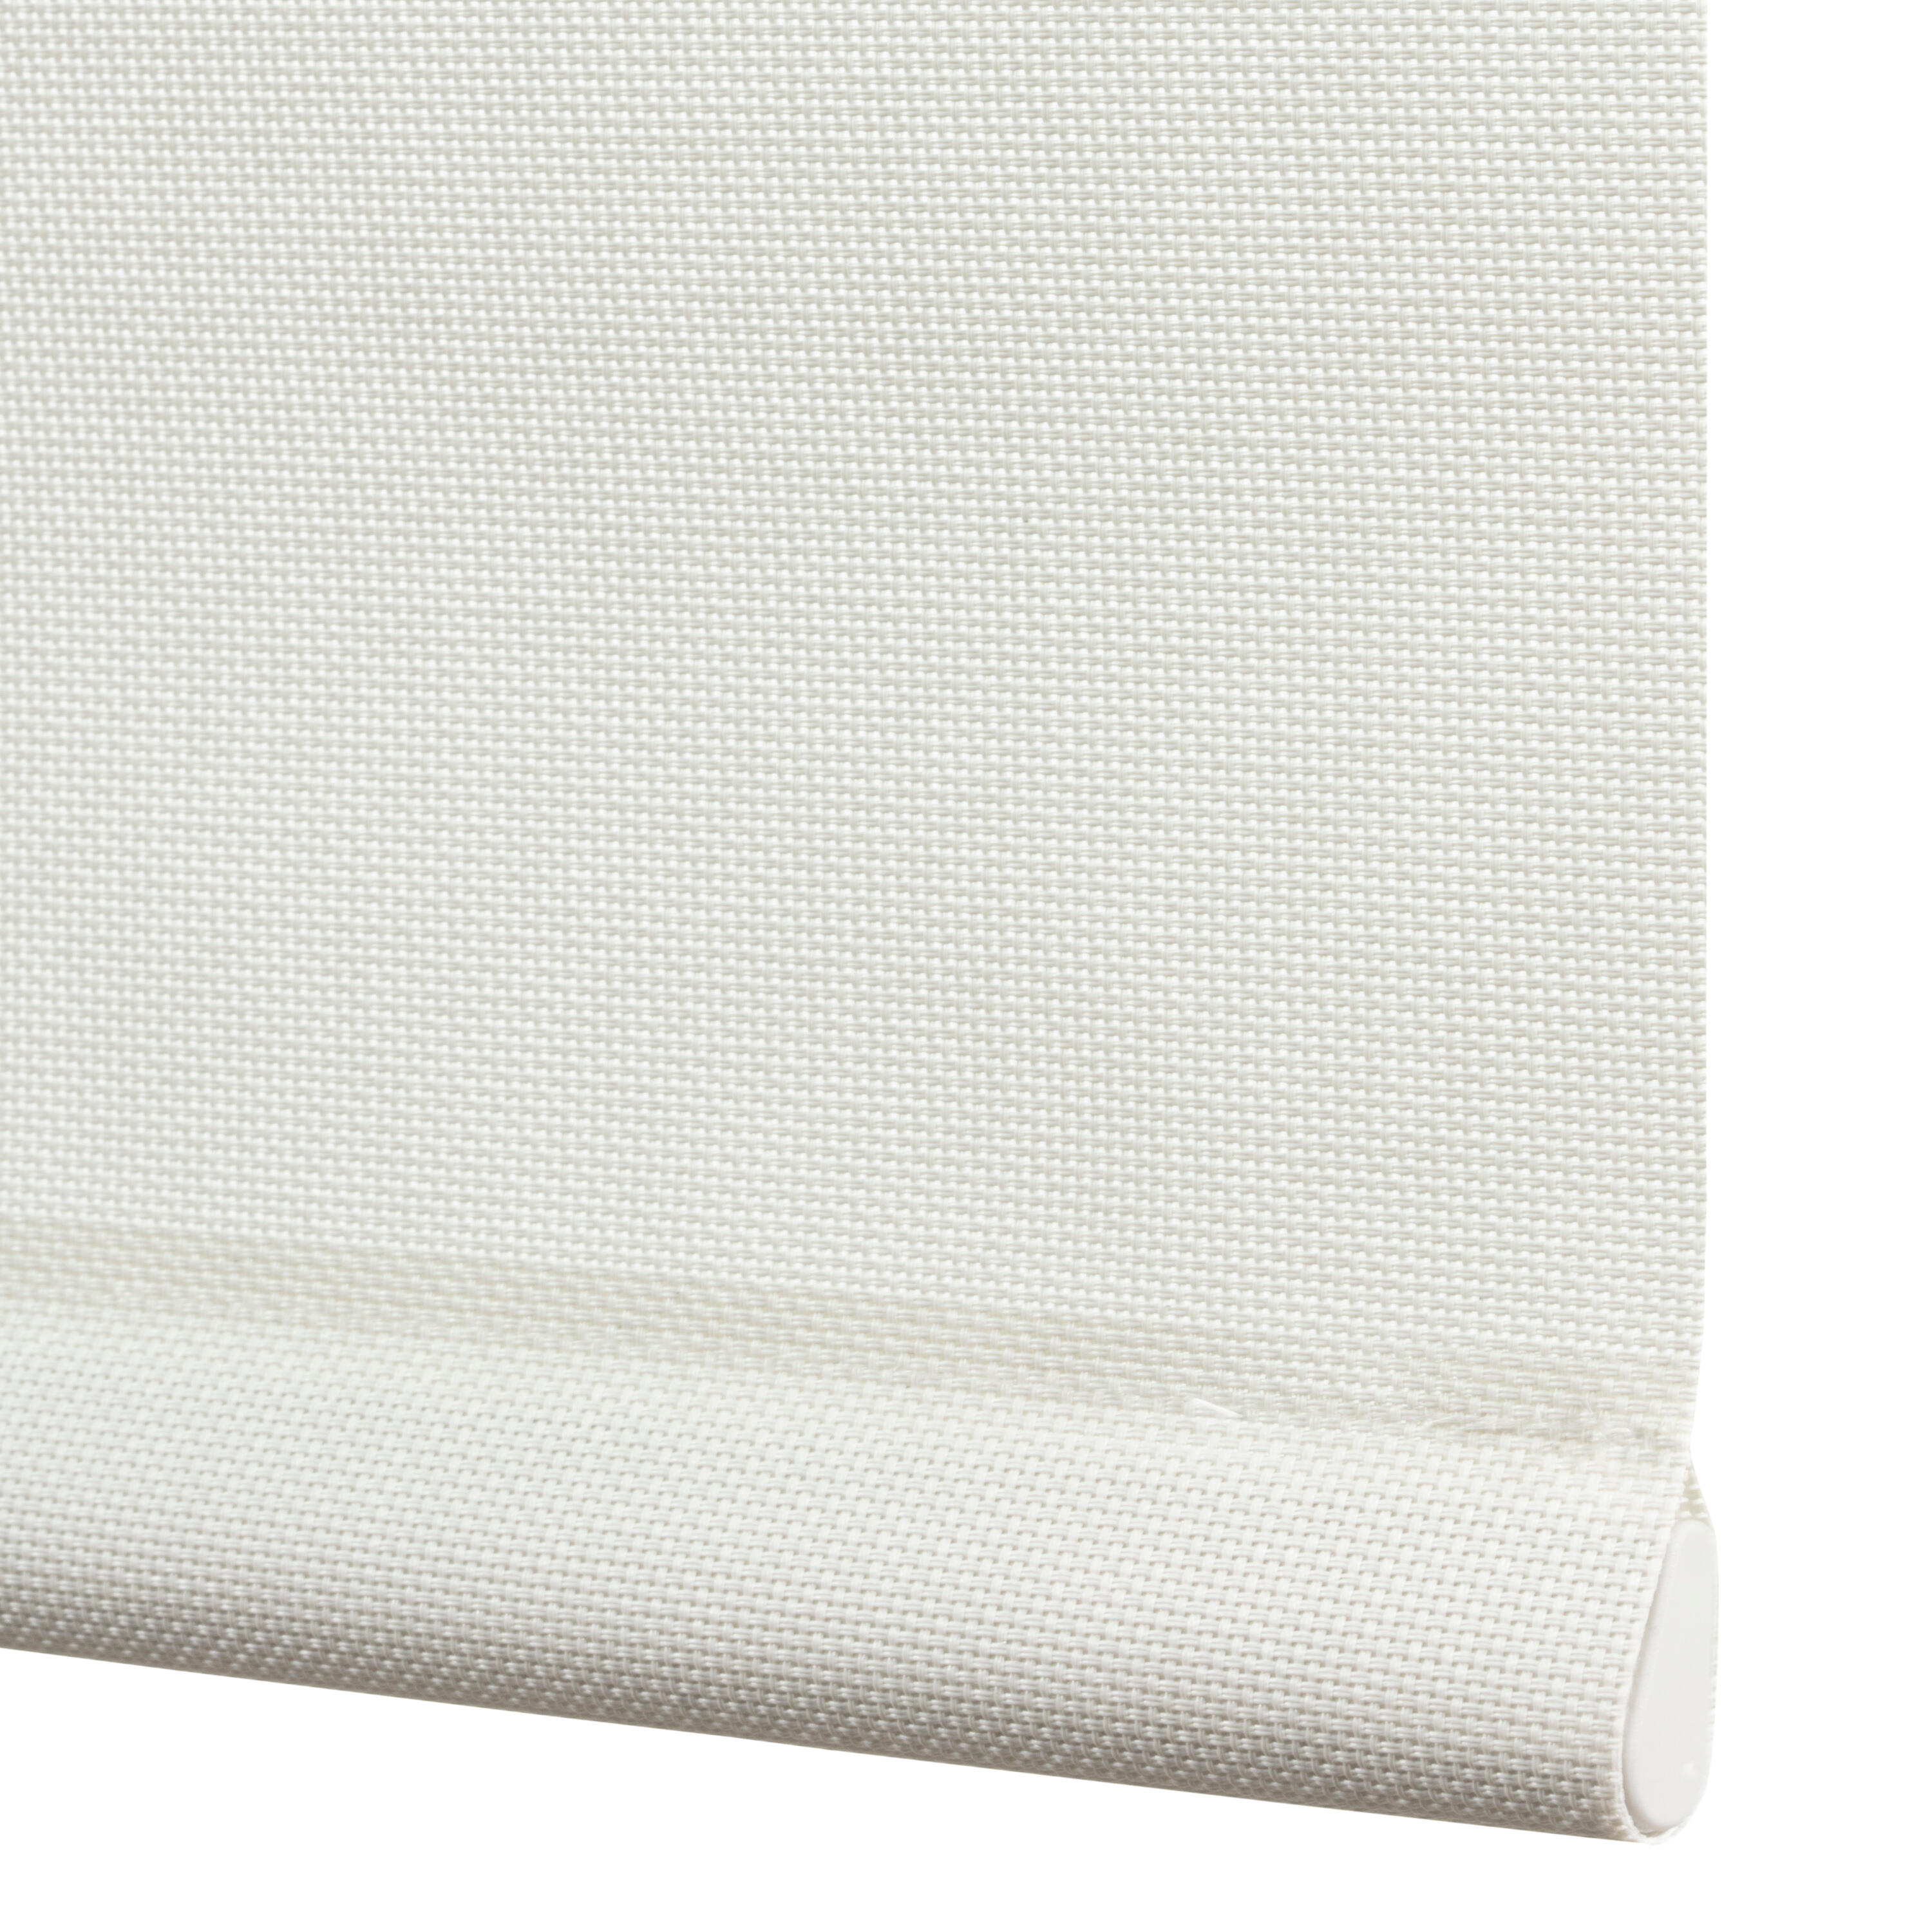 Tenda a rullo filtrante INSPIRE Brasilia bianco 150 x 250 cm - 2